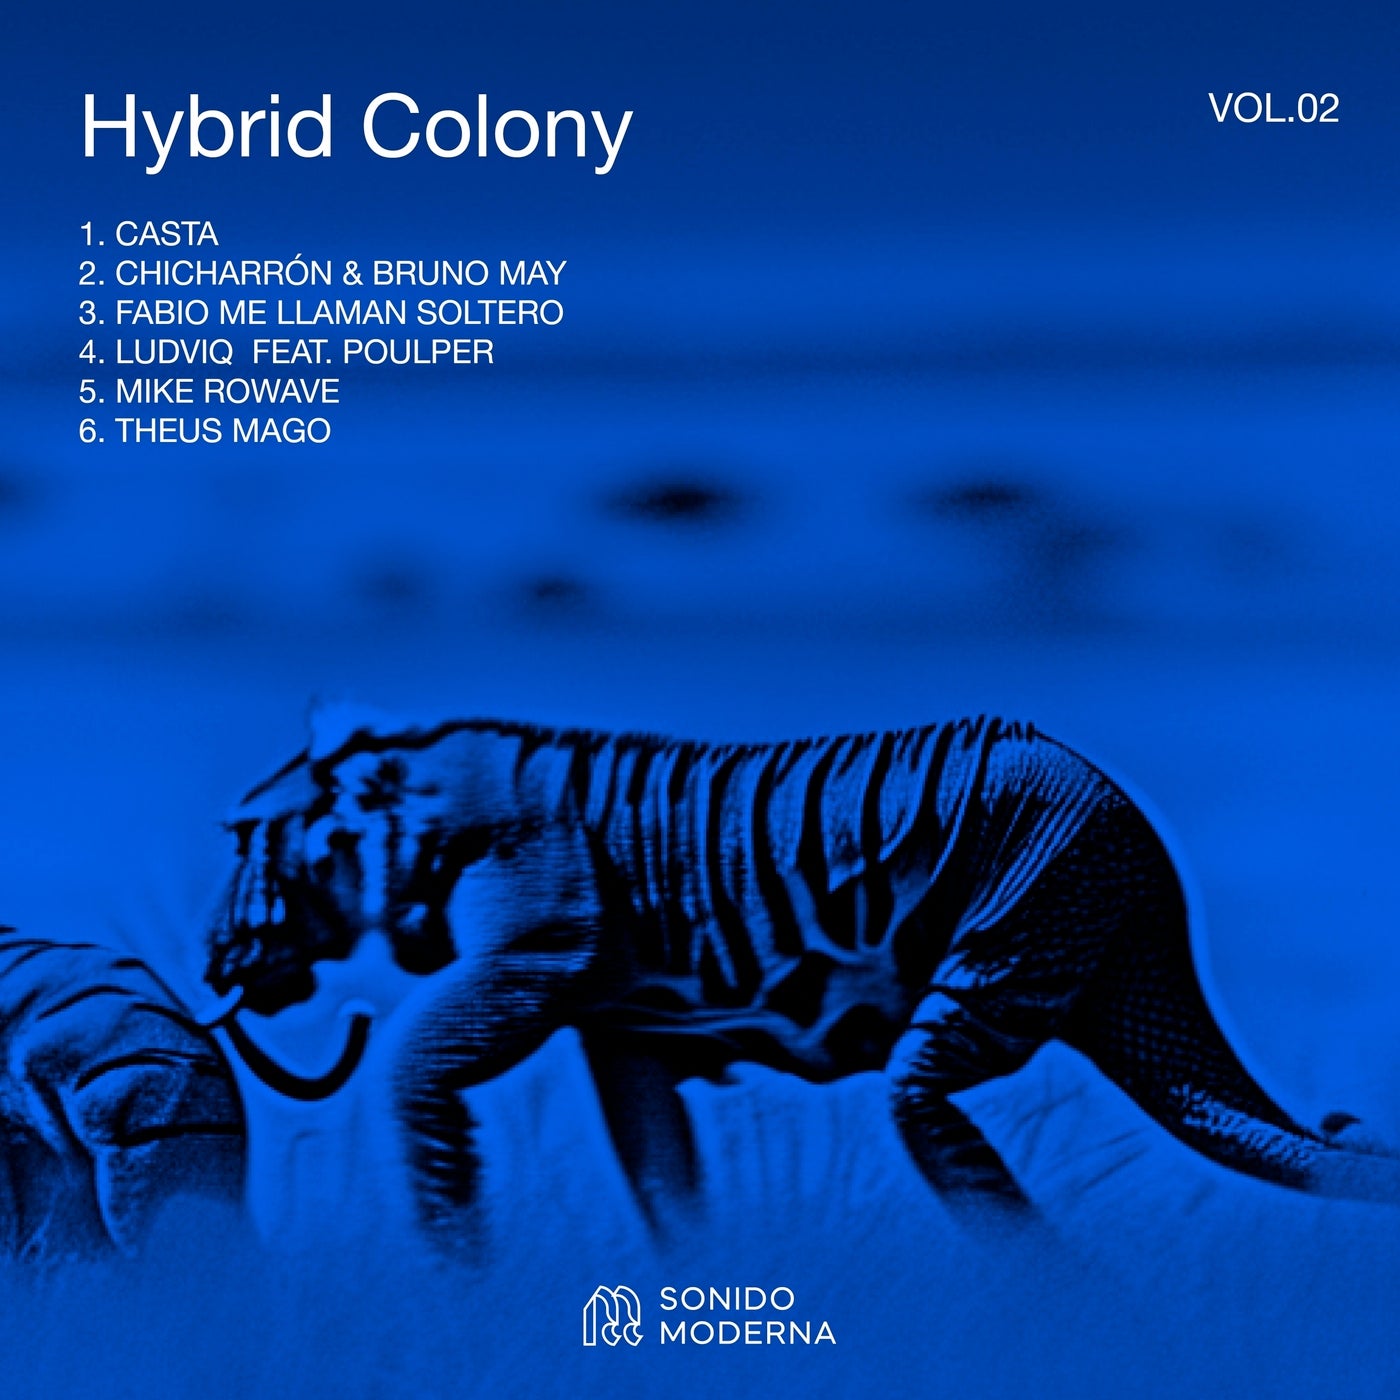 Hybrid Colony, Vol. 02